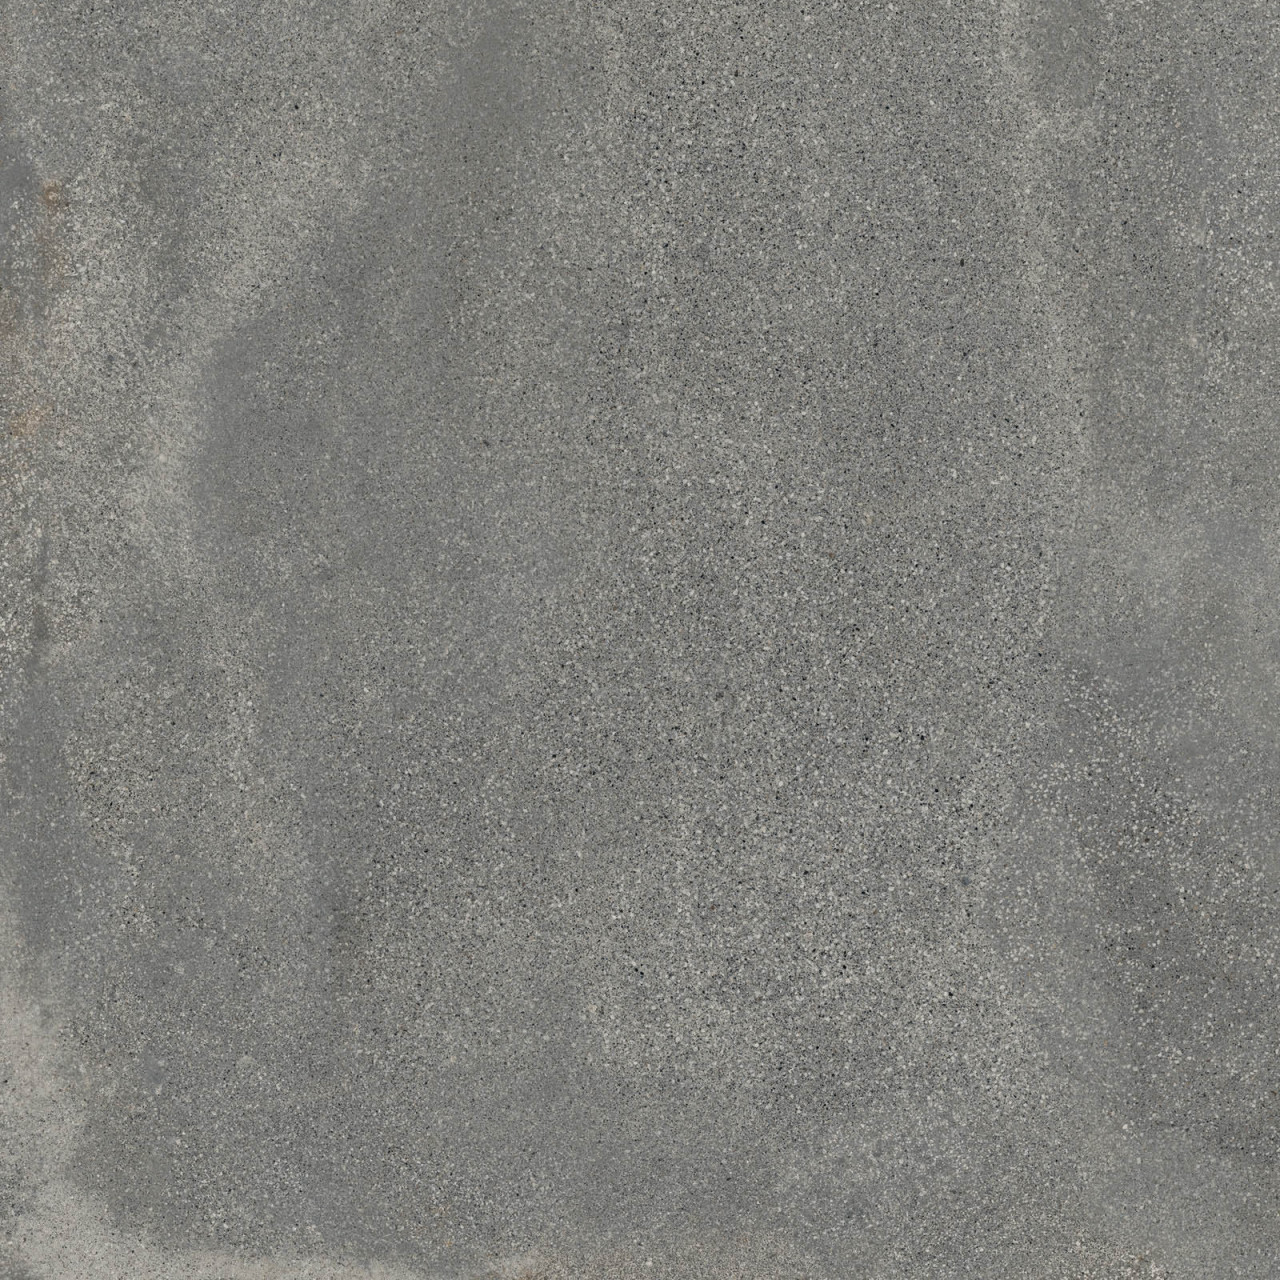 ABK Blend Concrete Grey 60 x 60 cm